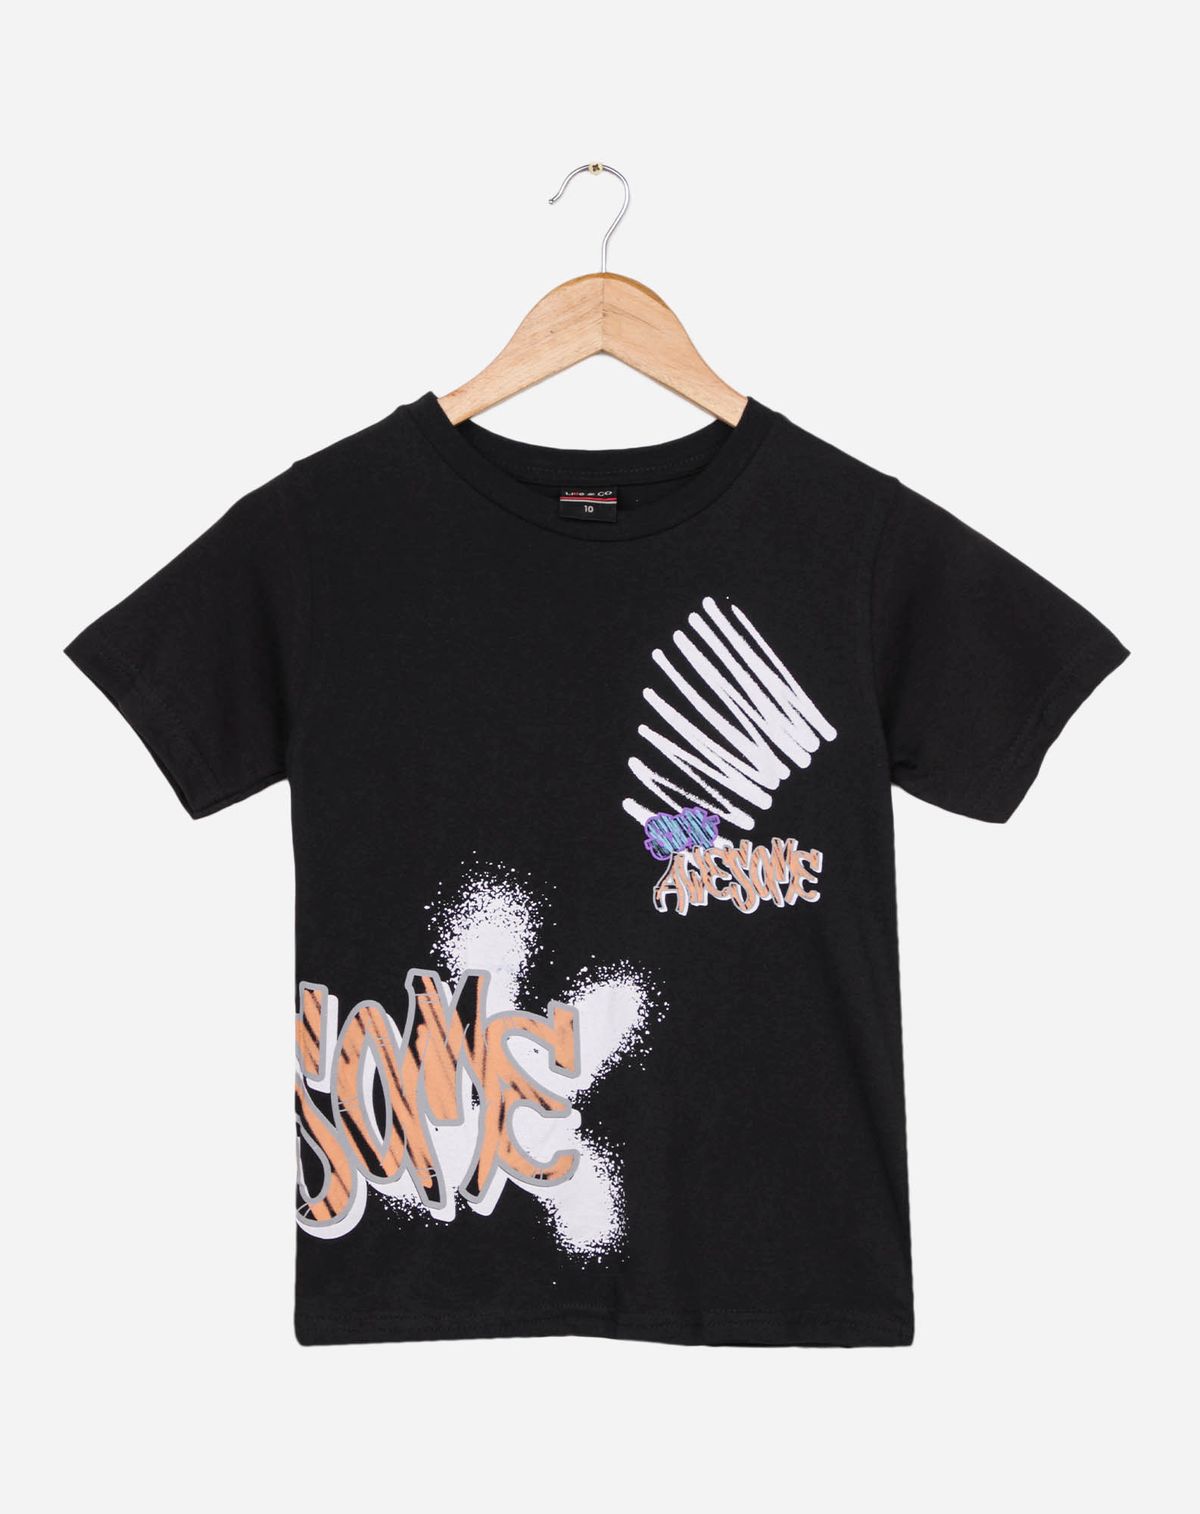 675257006-camiseta-manga-curta-juvenil-menino-estampa-grafite-preto-12-9c6